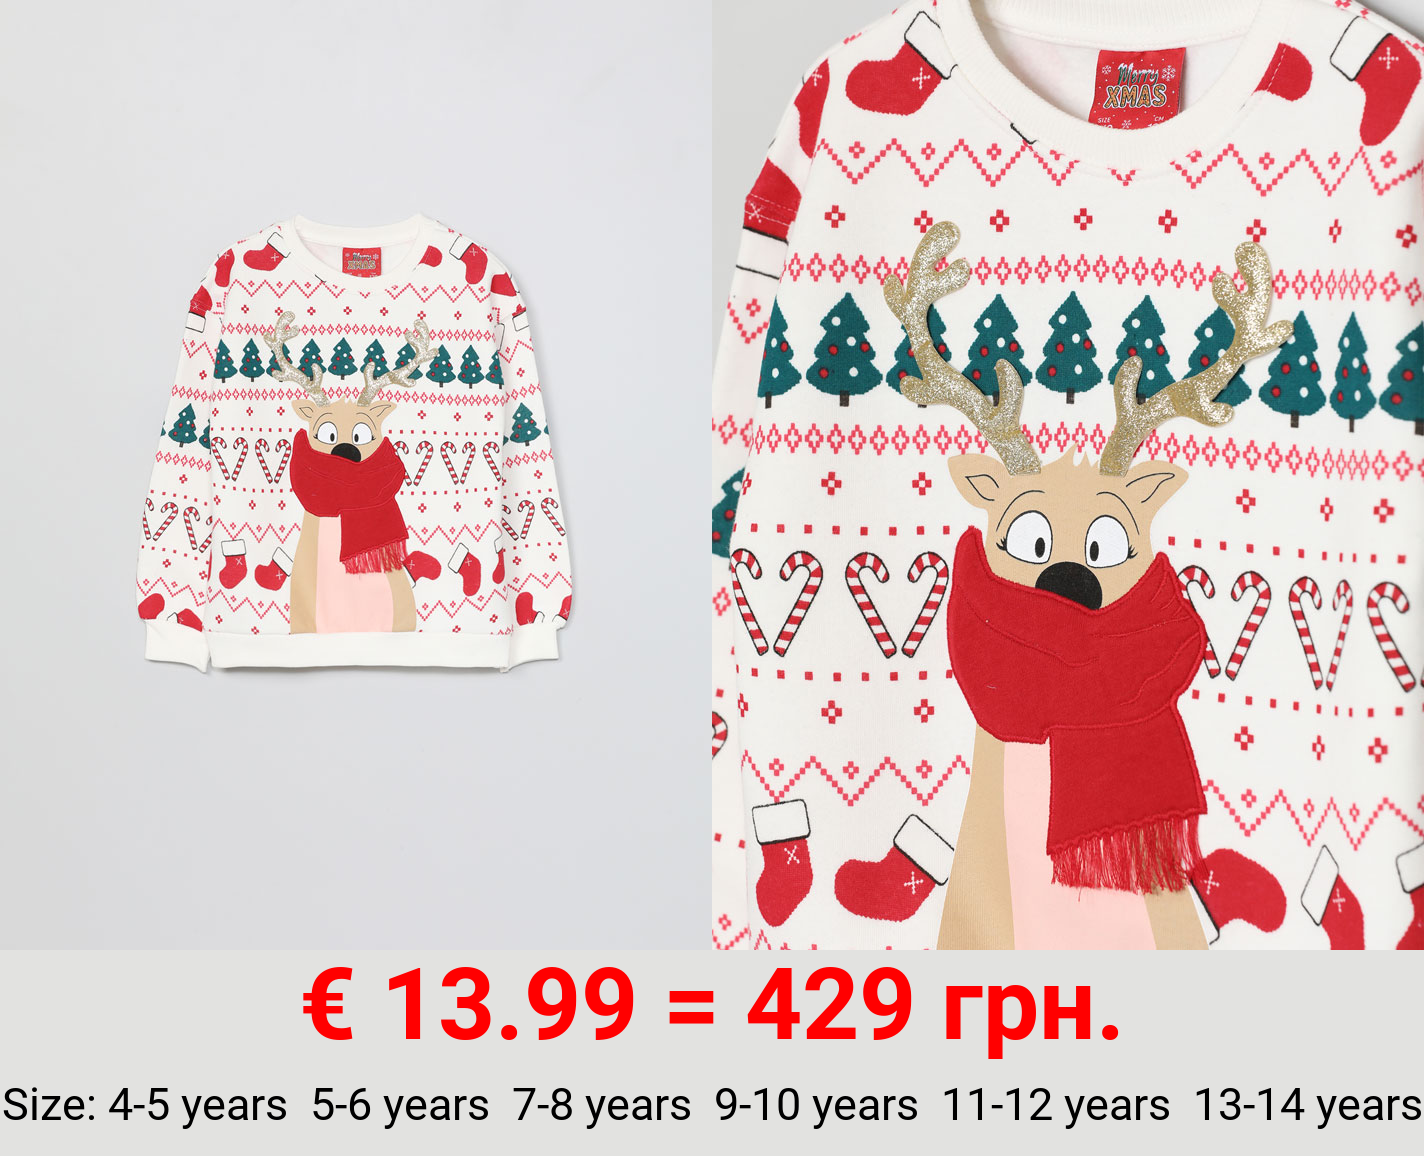 Interactive Christmas sweatshirt